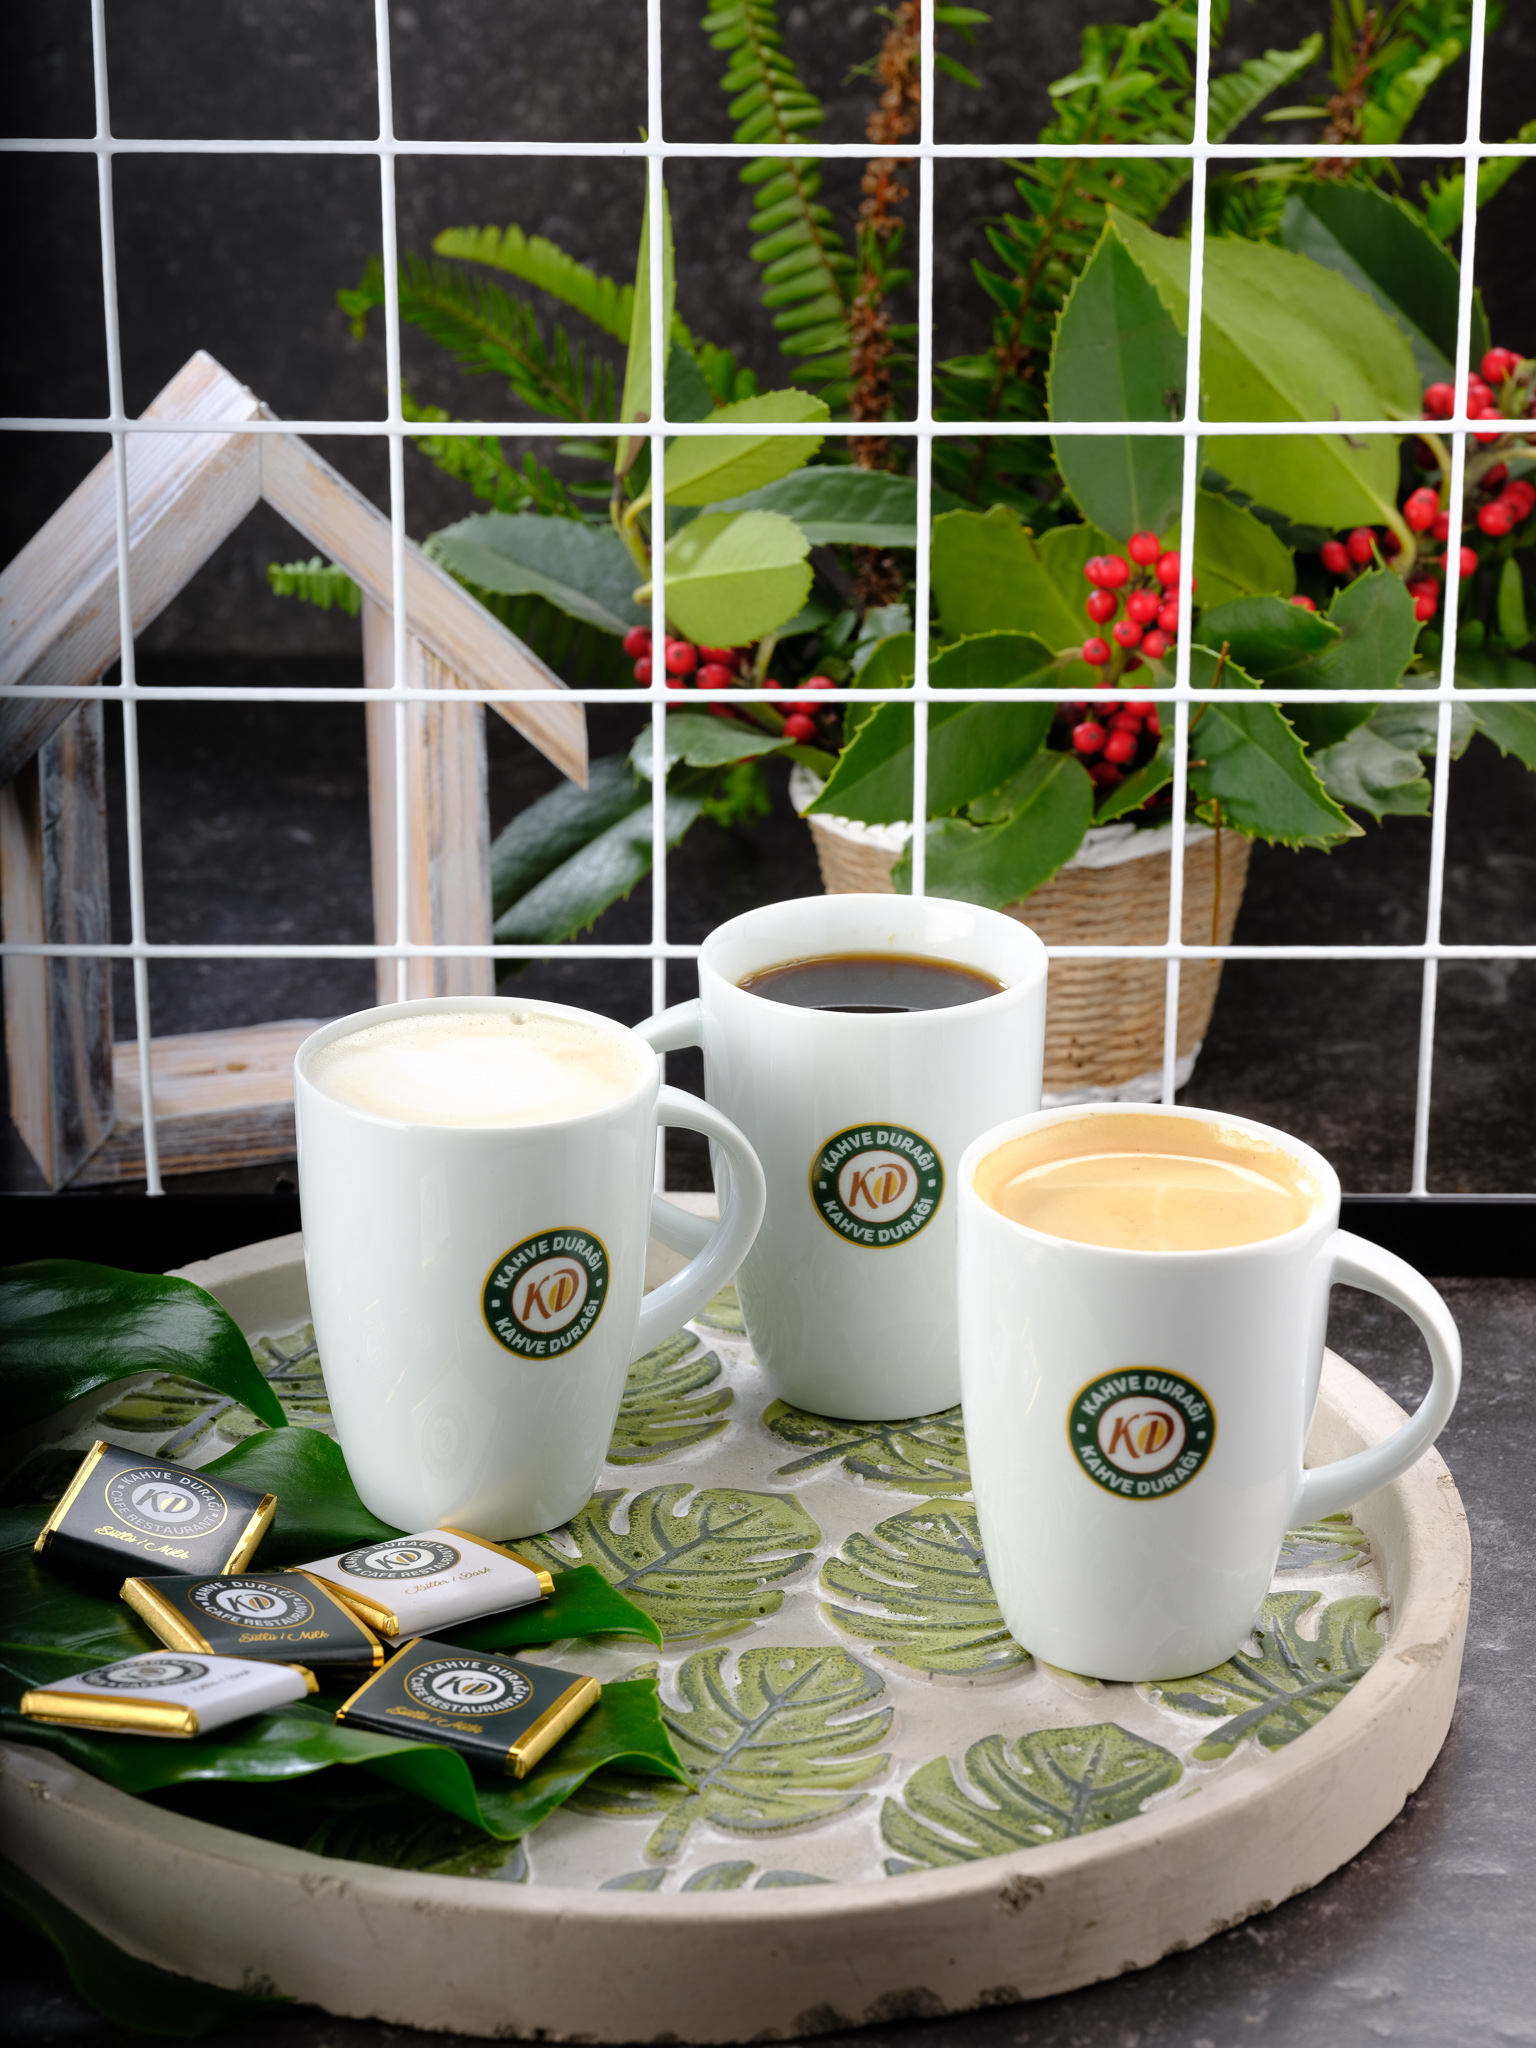 
	Güne keyifle devam etmen filtre kahve için hazır!

	#tamkapanma günlerinde evde kahve keyfine kim eşlik ediyor?

	 

	
